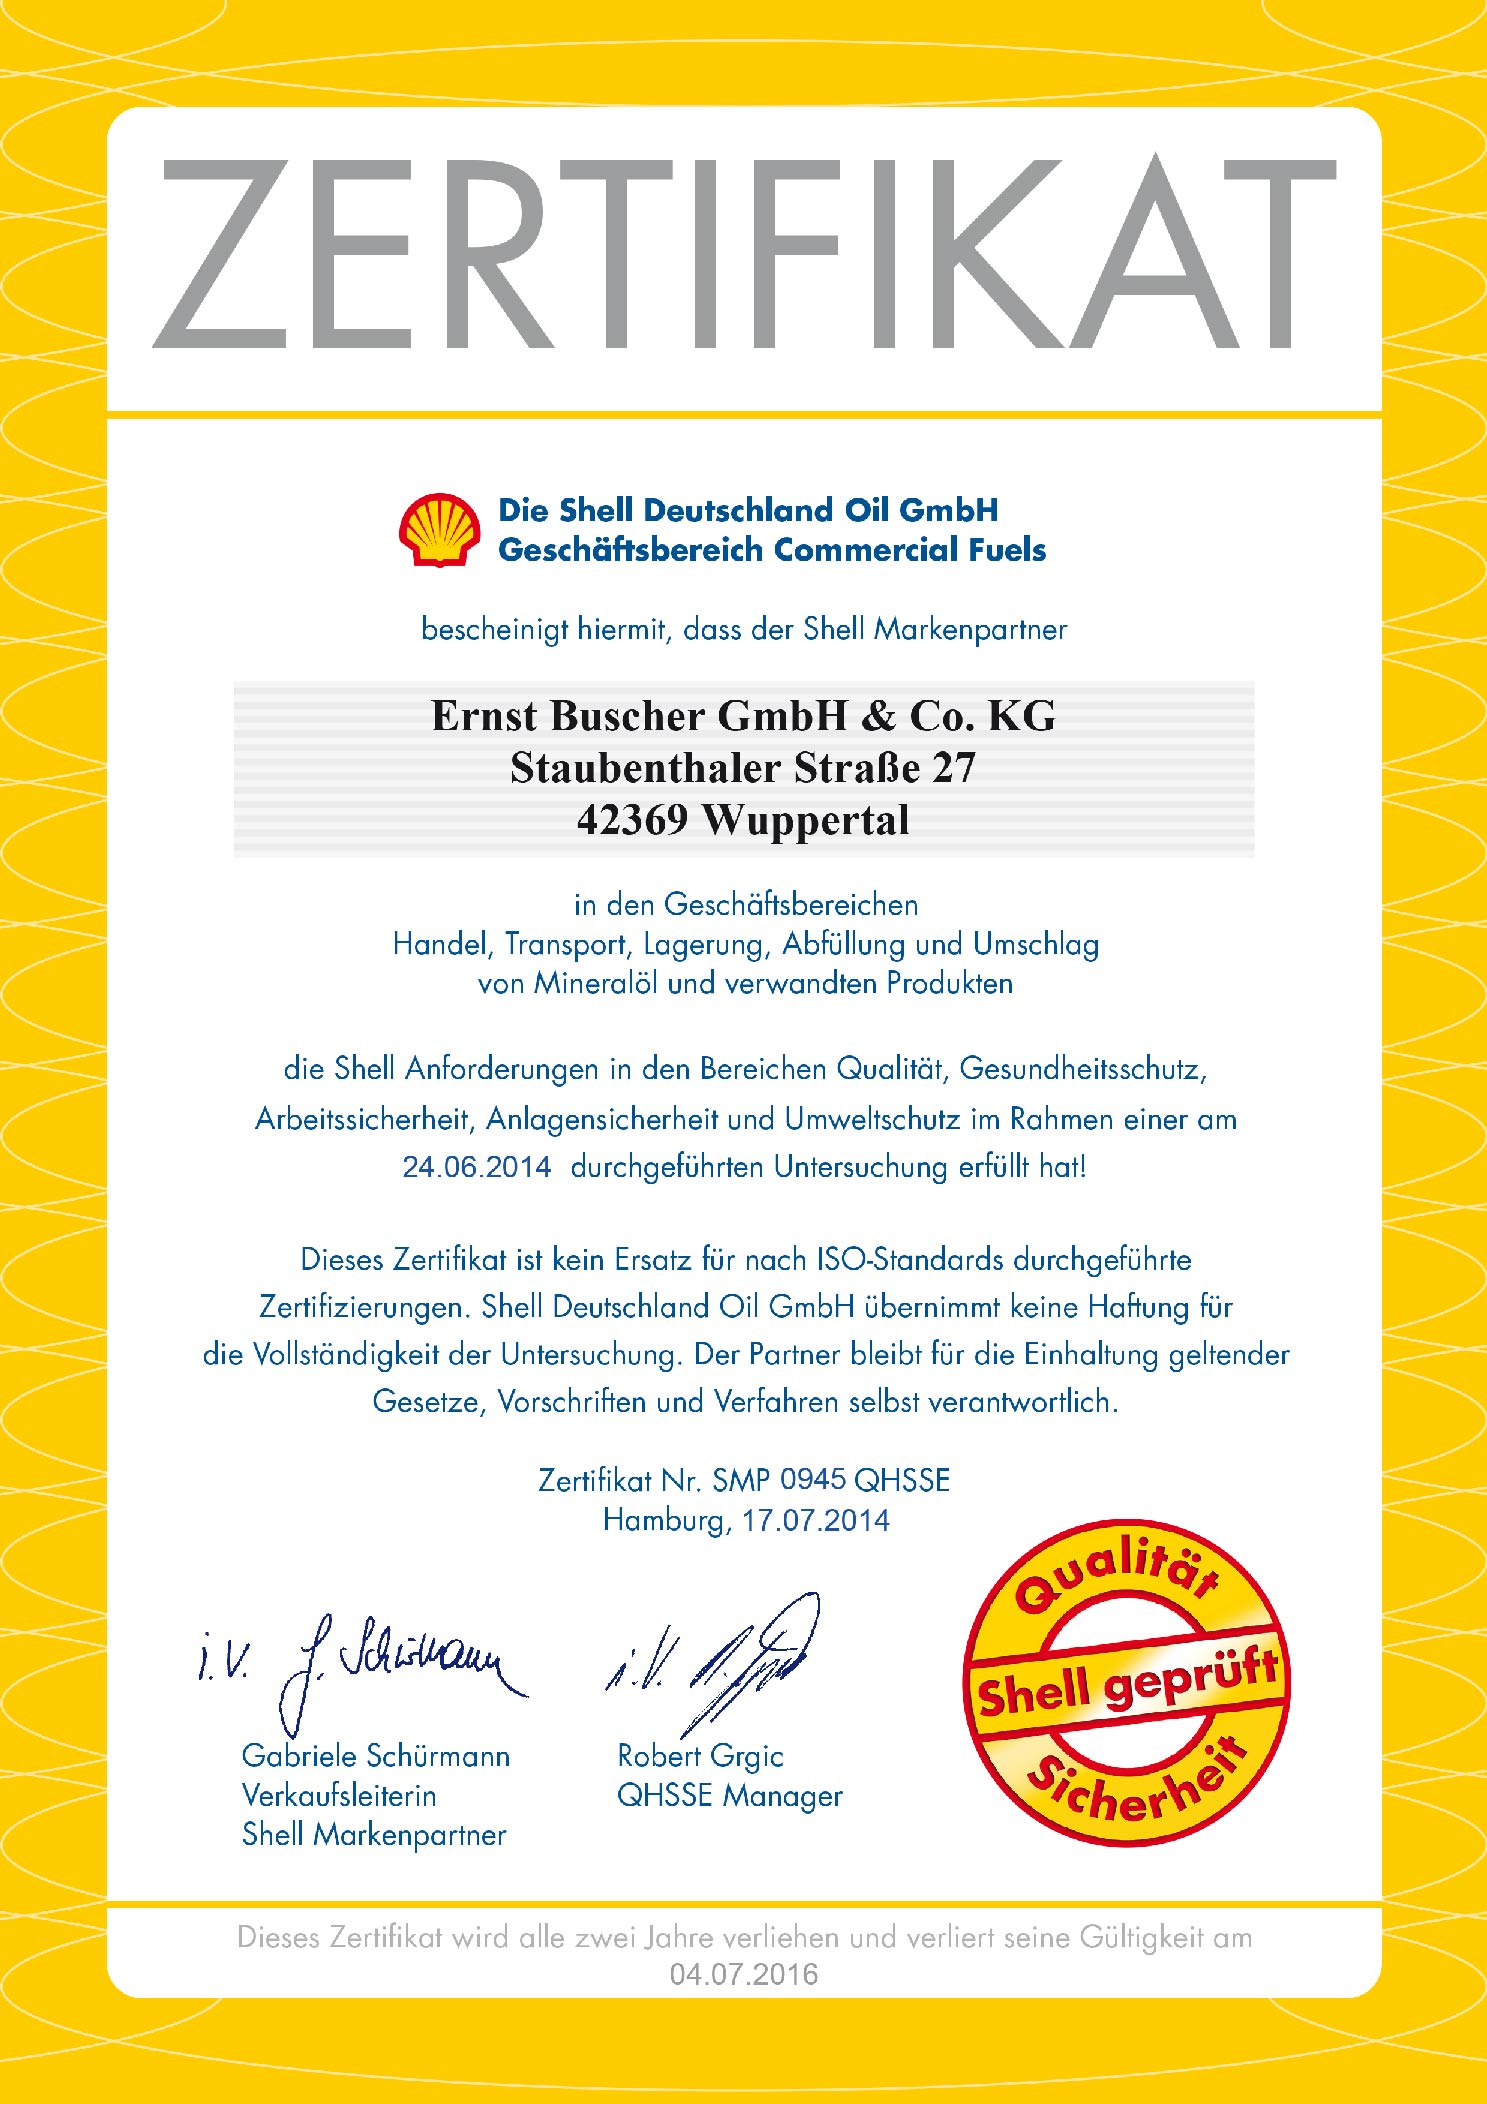 Zertifikat_QHSSE_Commercial_Fuels_Ernst_Buscher_GmbH_2014